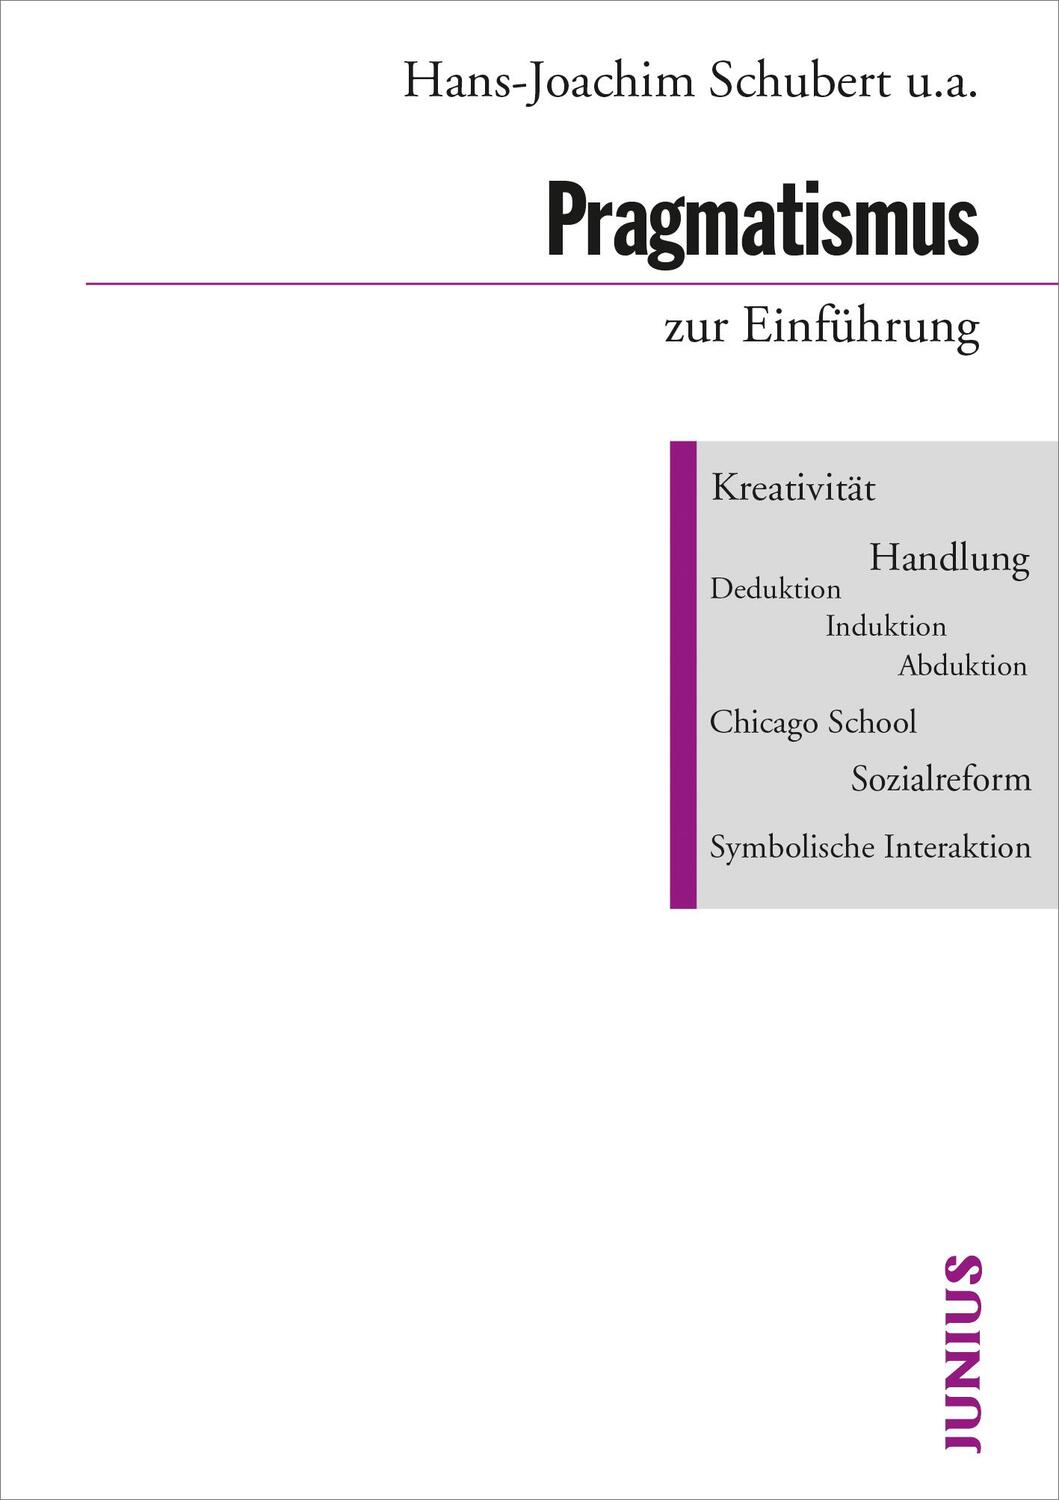 Pragmatismus zur Einführung - Schubert, Hans-Joachim